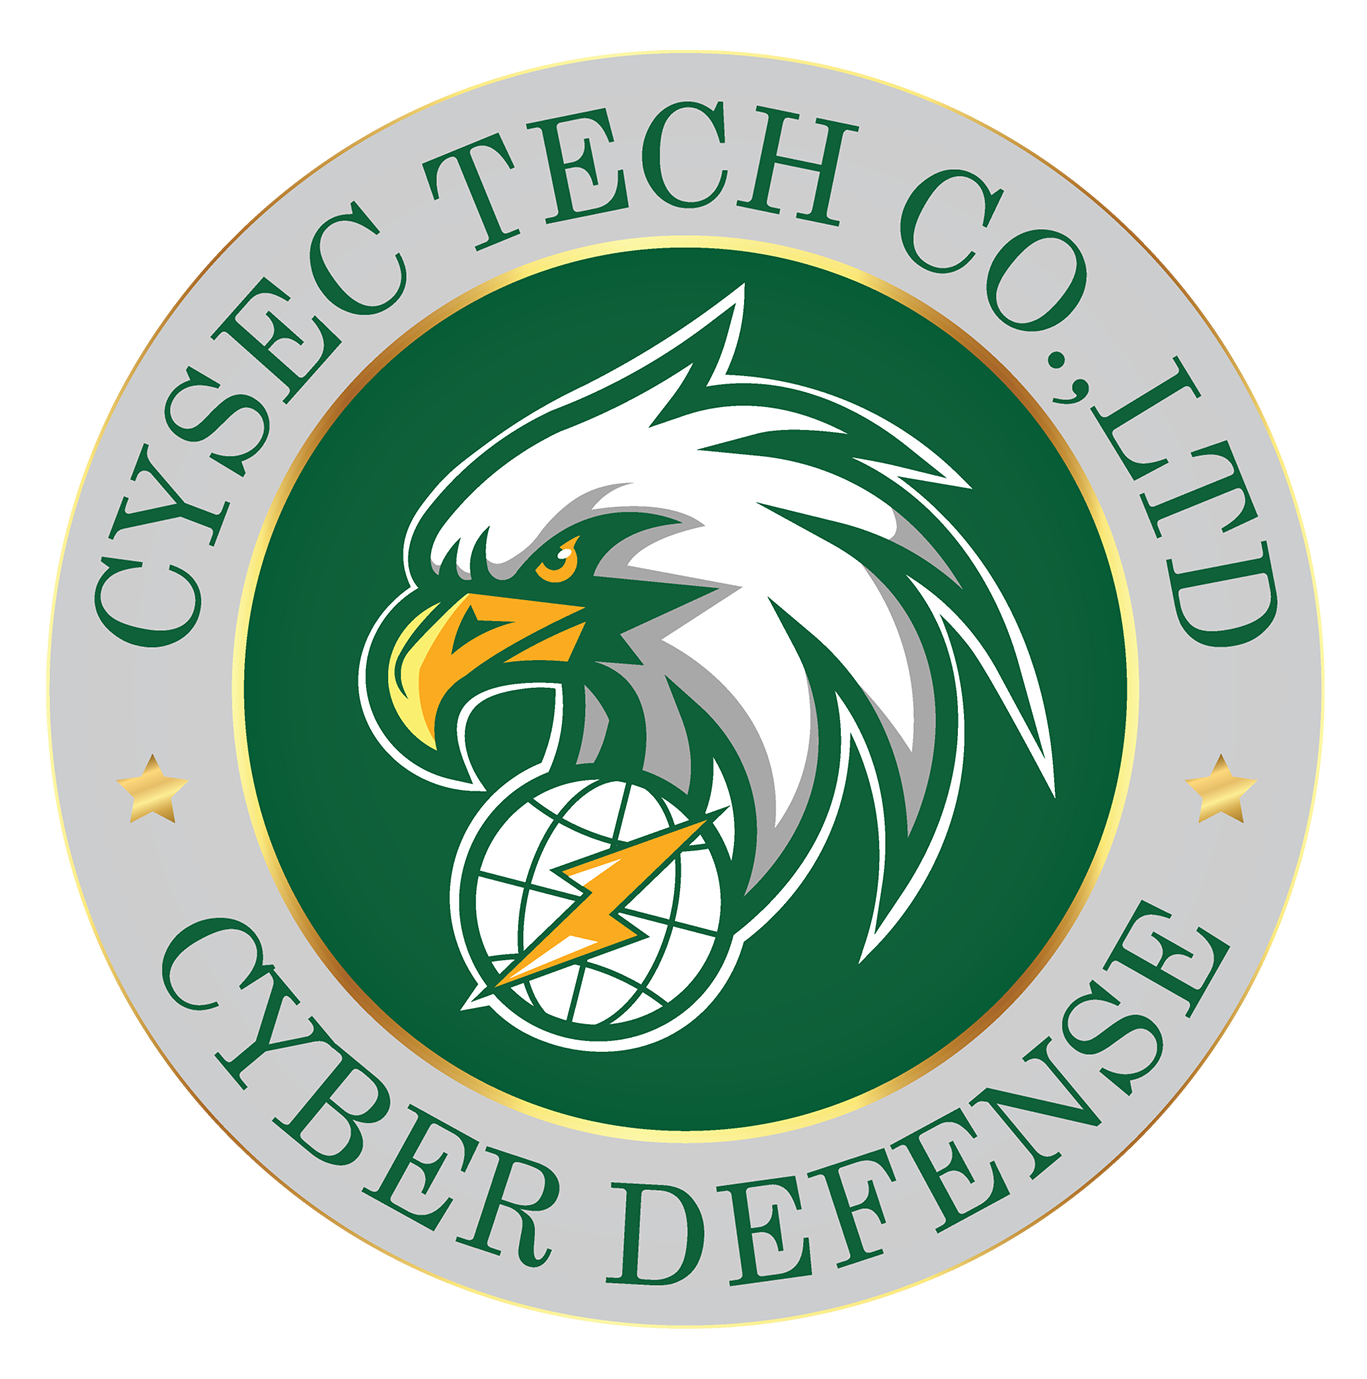 CySec Tech